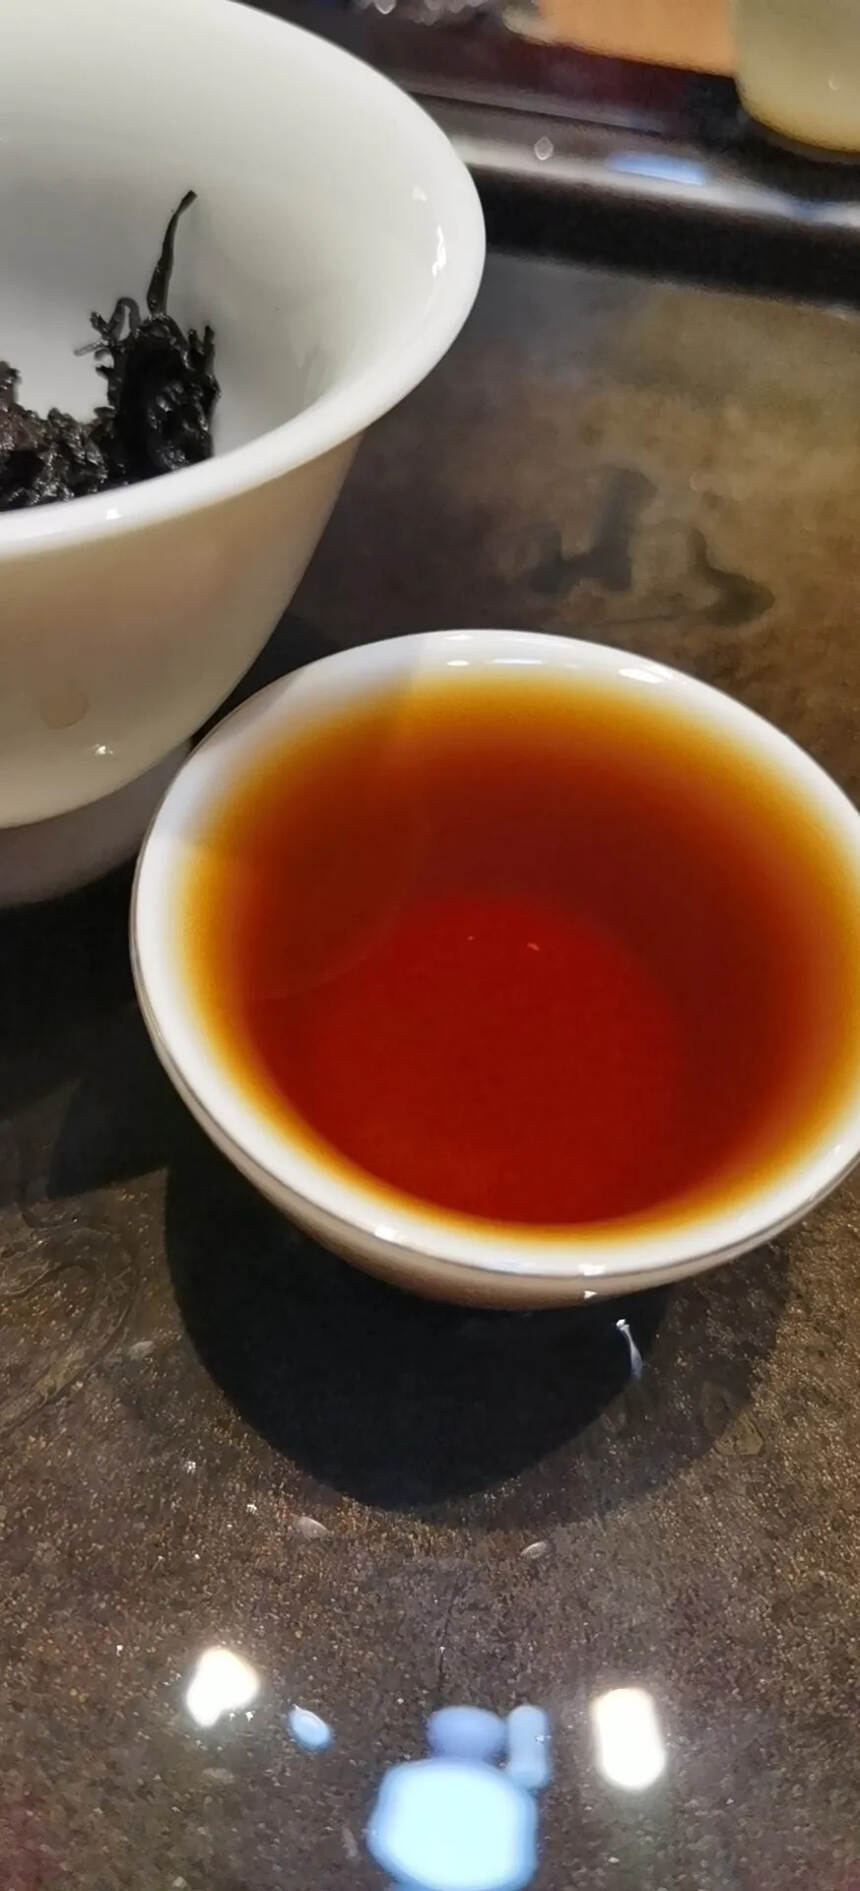 97年勐养茶厂绿印熟茶，中茶外包定制。醇厚甘甜味极好